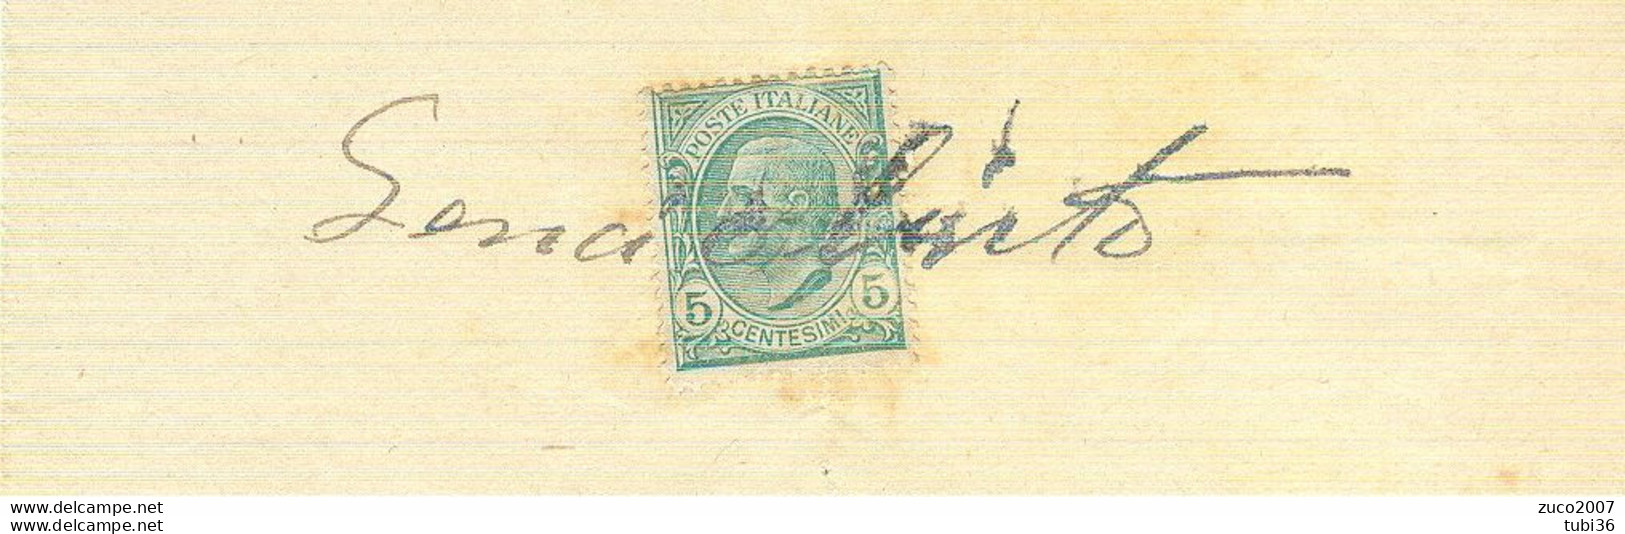 VITTORIO EMANUELE III Cent.5 (s81),SU RICEVUTA PRIVATA,anno 1914,USO MARCA DA BOLLO, - Revenue Stamps